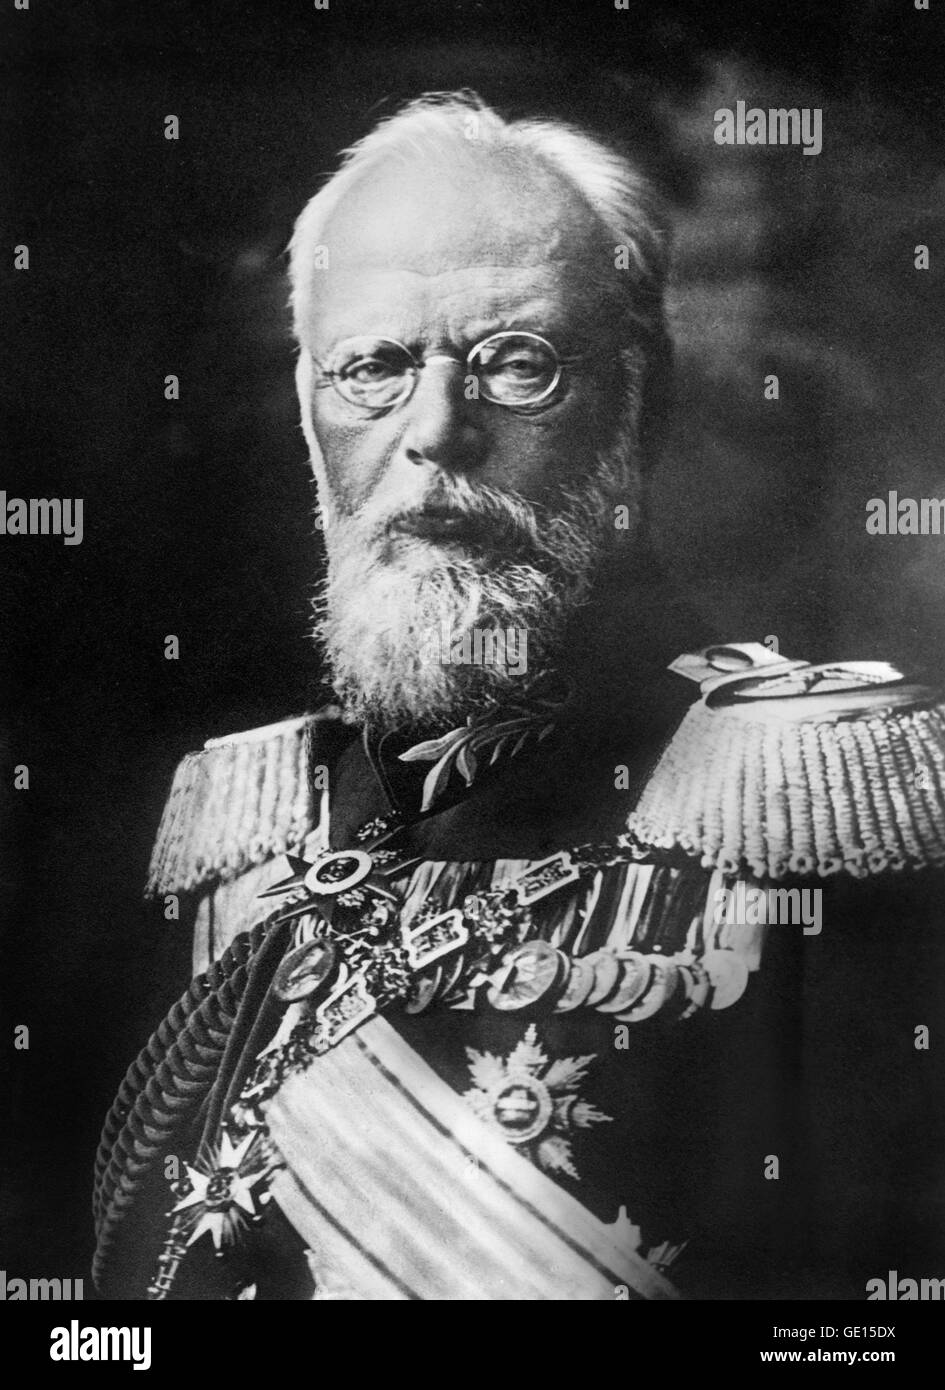 Louis III de Bavière. Portrait du Roi Louis III (1845-1921) qui fut le dernier roi de Bavière, régnant de 1913 à 1918. Photo non datée de Bain News Service. Banque D'Images